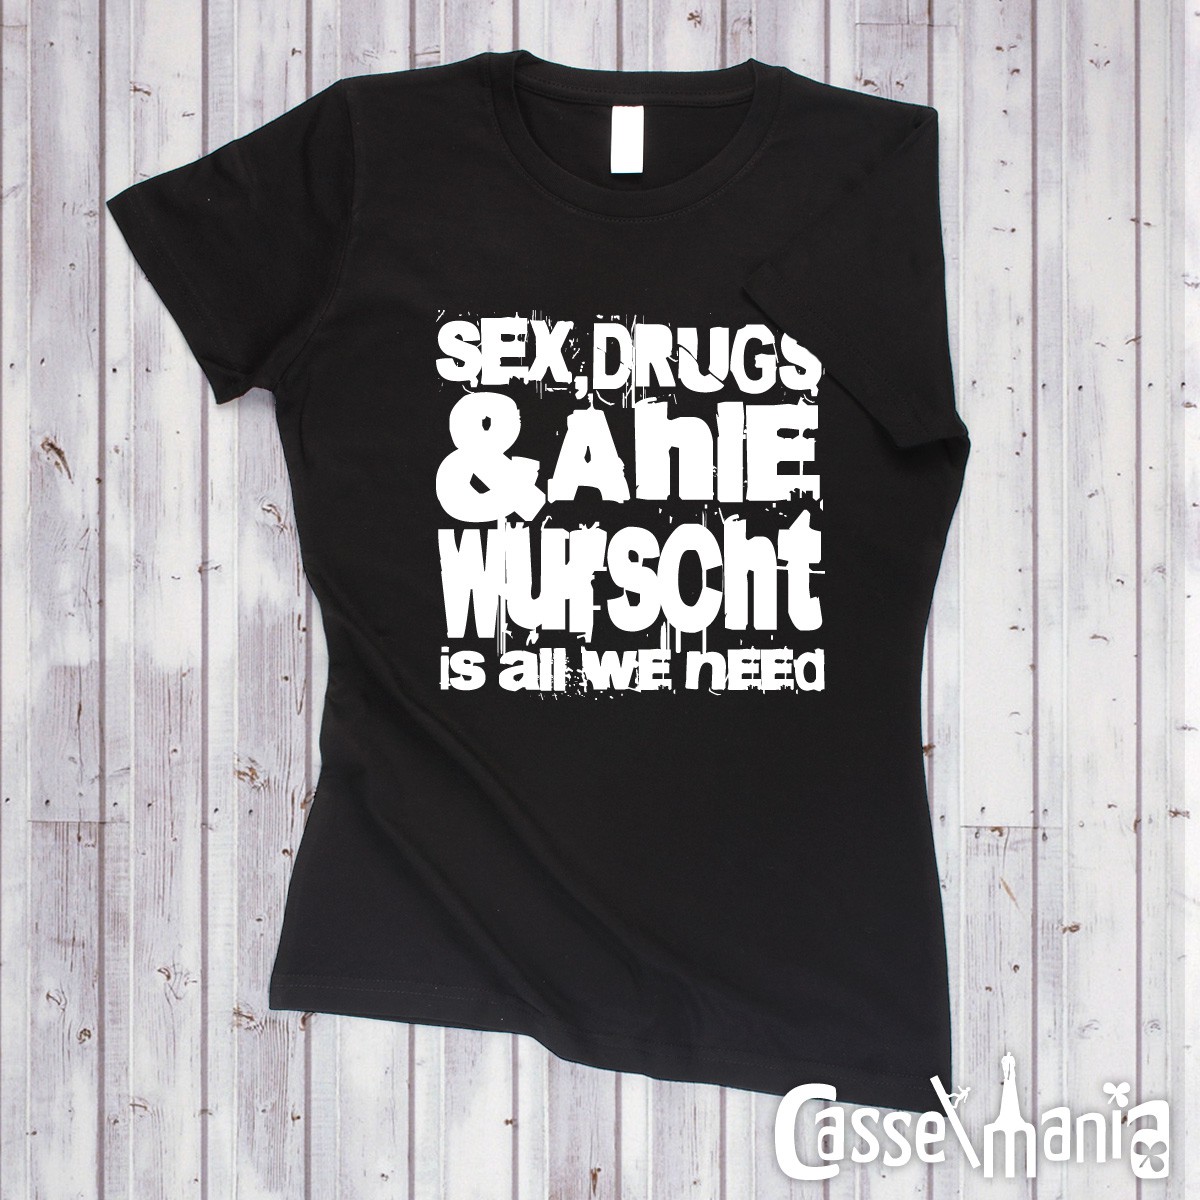 Sex, Drugs & Ahle Wurscht - Women